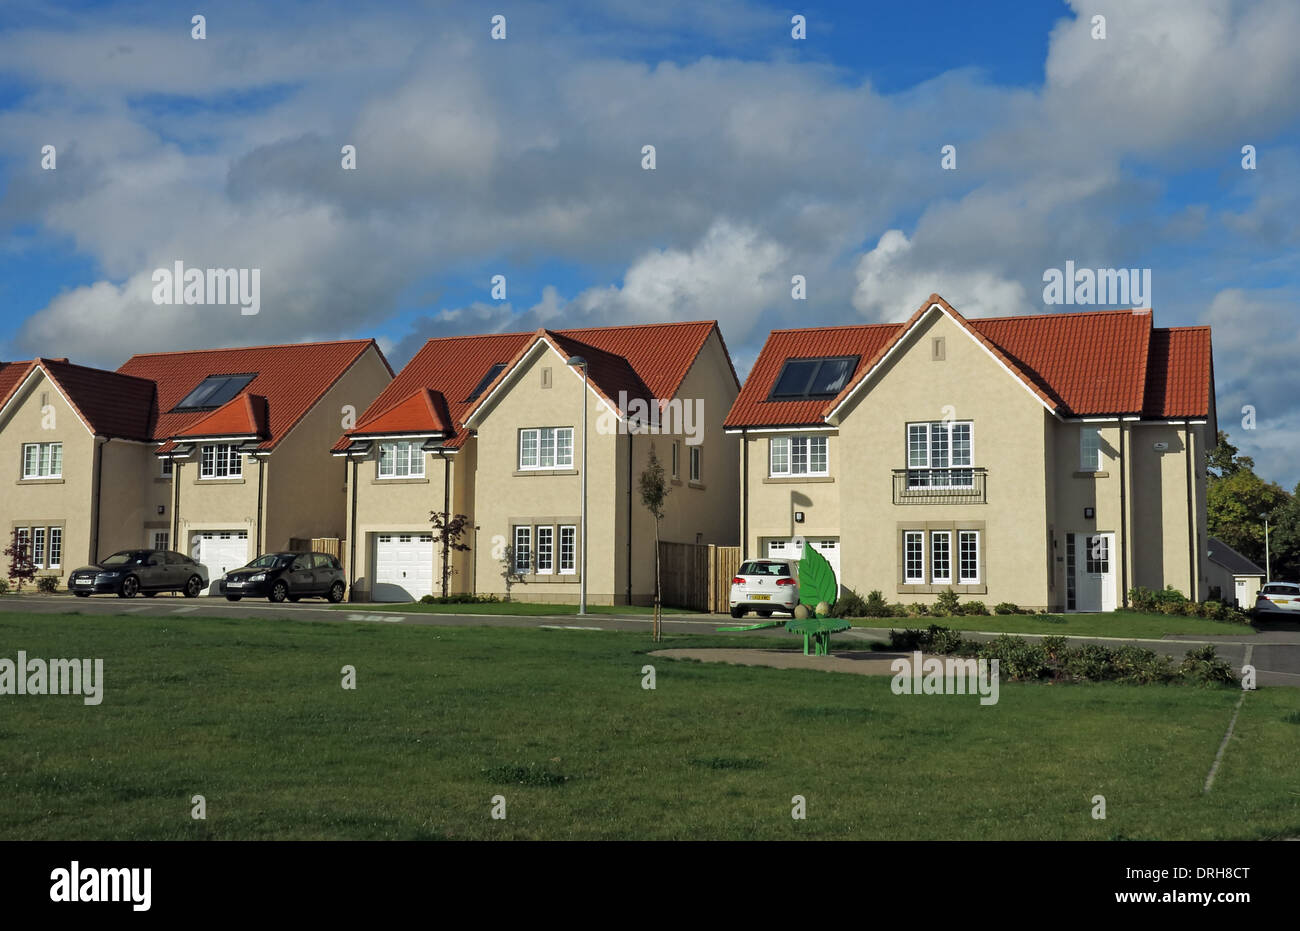 Maisons neuves, sur un domaine Vicomte Dr, Eskbank, près de Dalkeith, Édimbourg Midlothian, Écosse, ROYAUME-UNI, EH22 3FX Banque D'Images